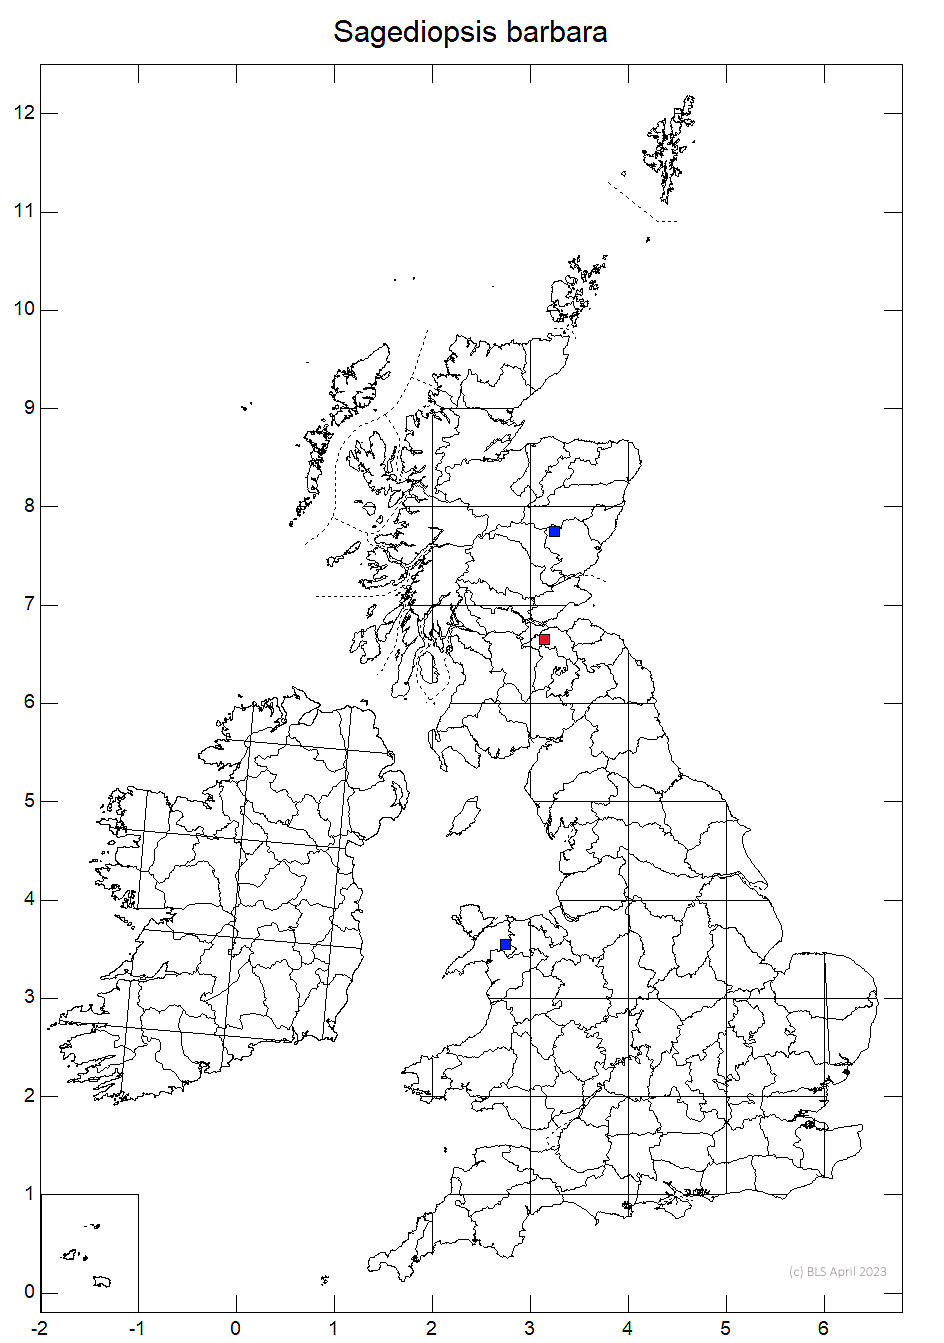 Sagediopsis barbara 10km sq distribution map